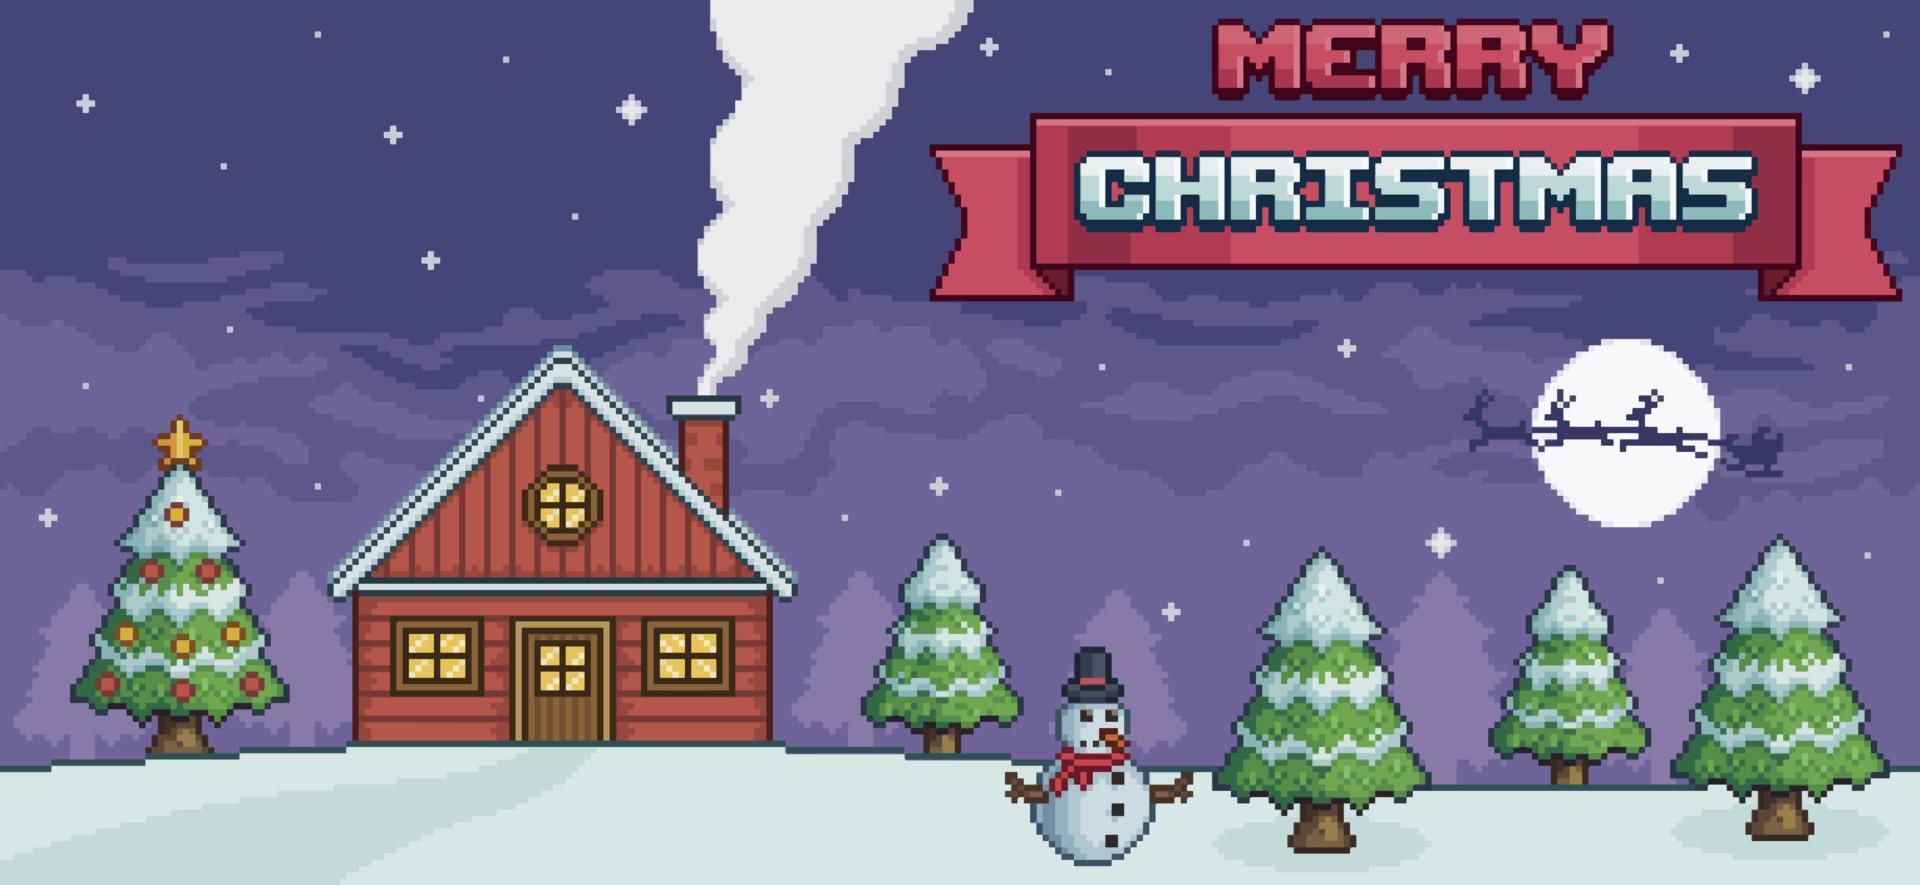 paisaje navideño de pixel art en la noche con casa roja, árbol de navidad, muñeco de nieve, santa claus, pinos y fondo de juego de 8 bits de nieve vector